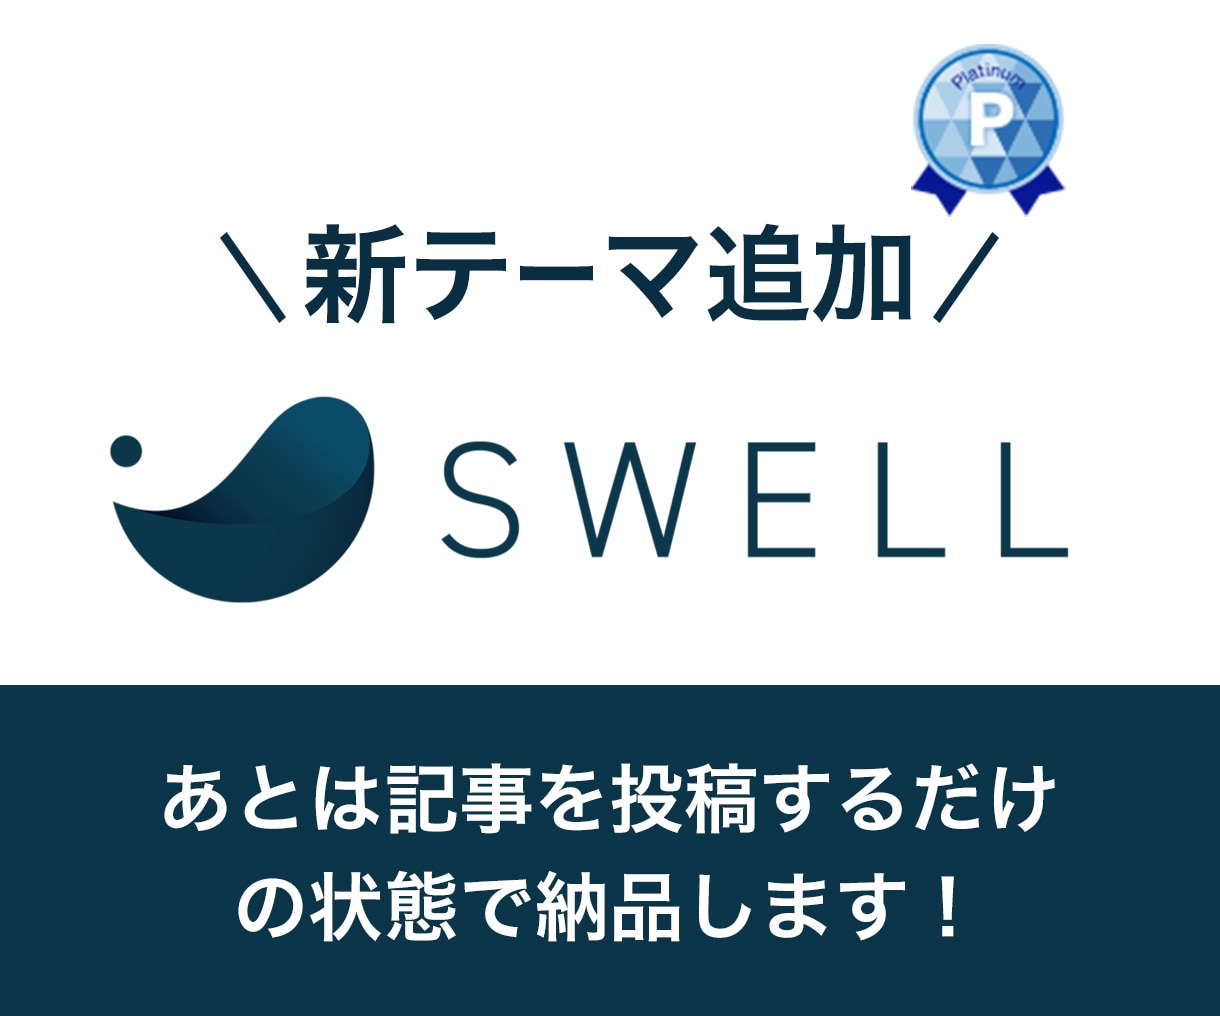 SWELLの初期設定/デザイン代行作成します ブログをはじめる方、無料テーマから移行作業などお任せください イメージ1